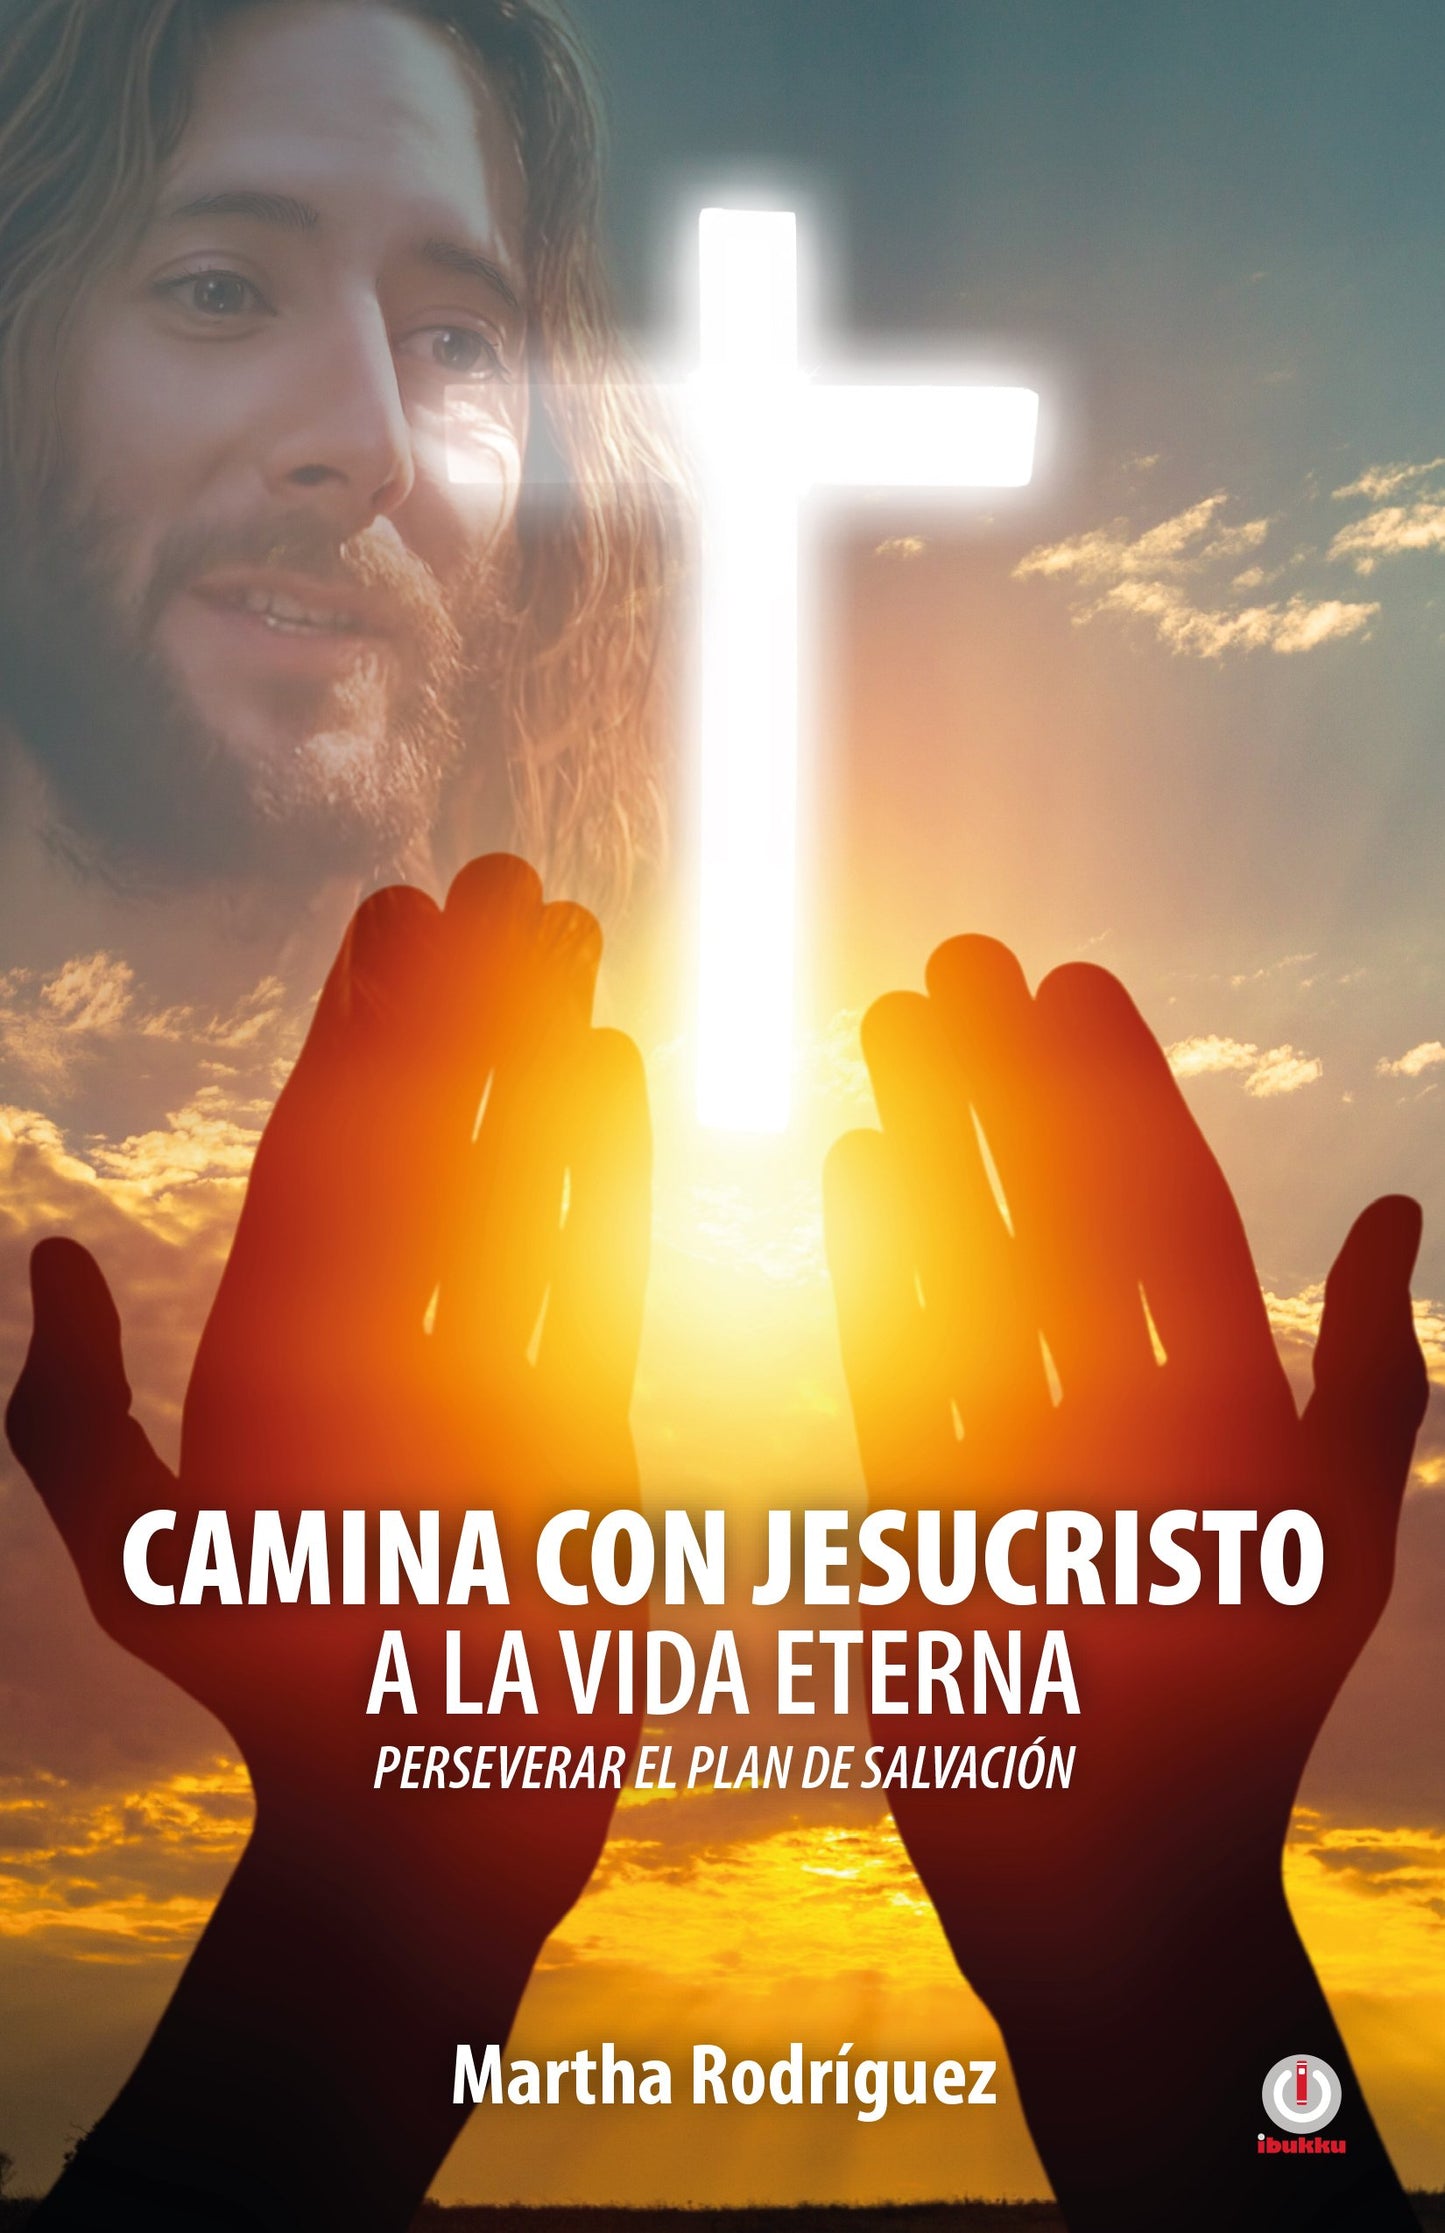 Camina con Jesucristo a la vida eterna: Perseverar el plan de salvación (Impreso)